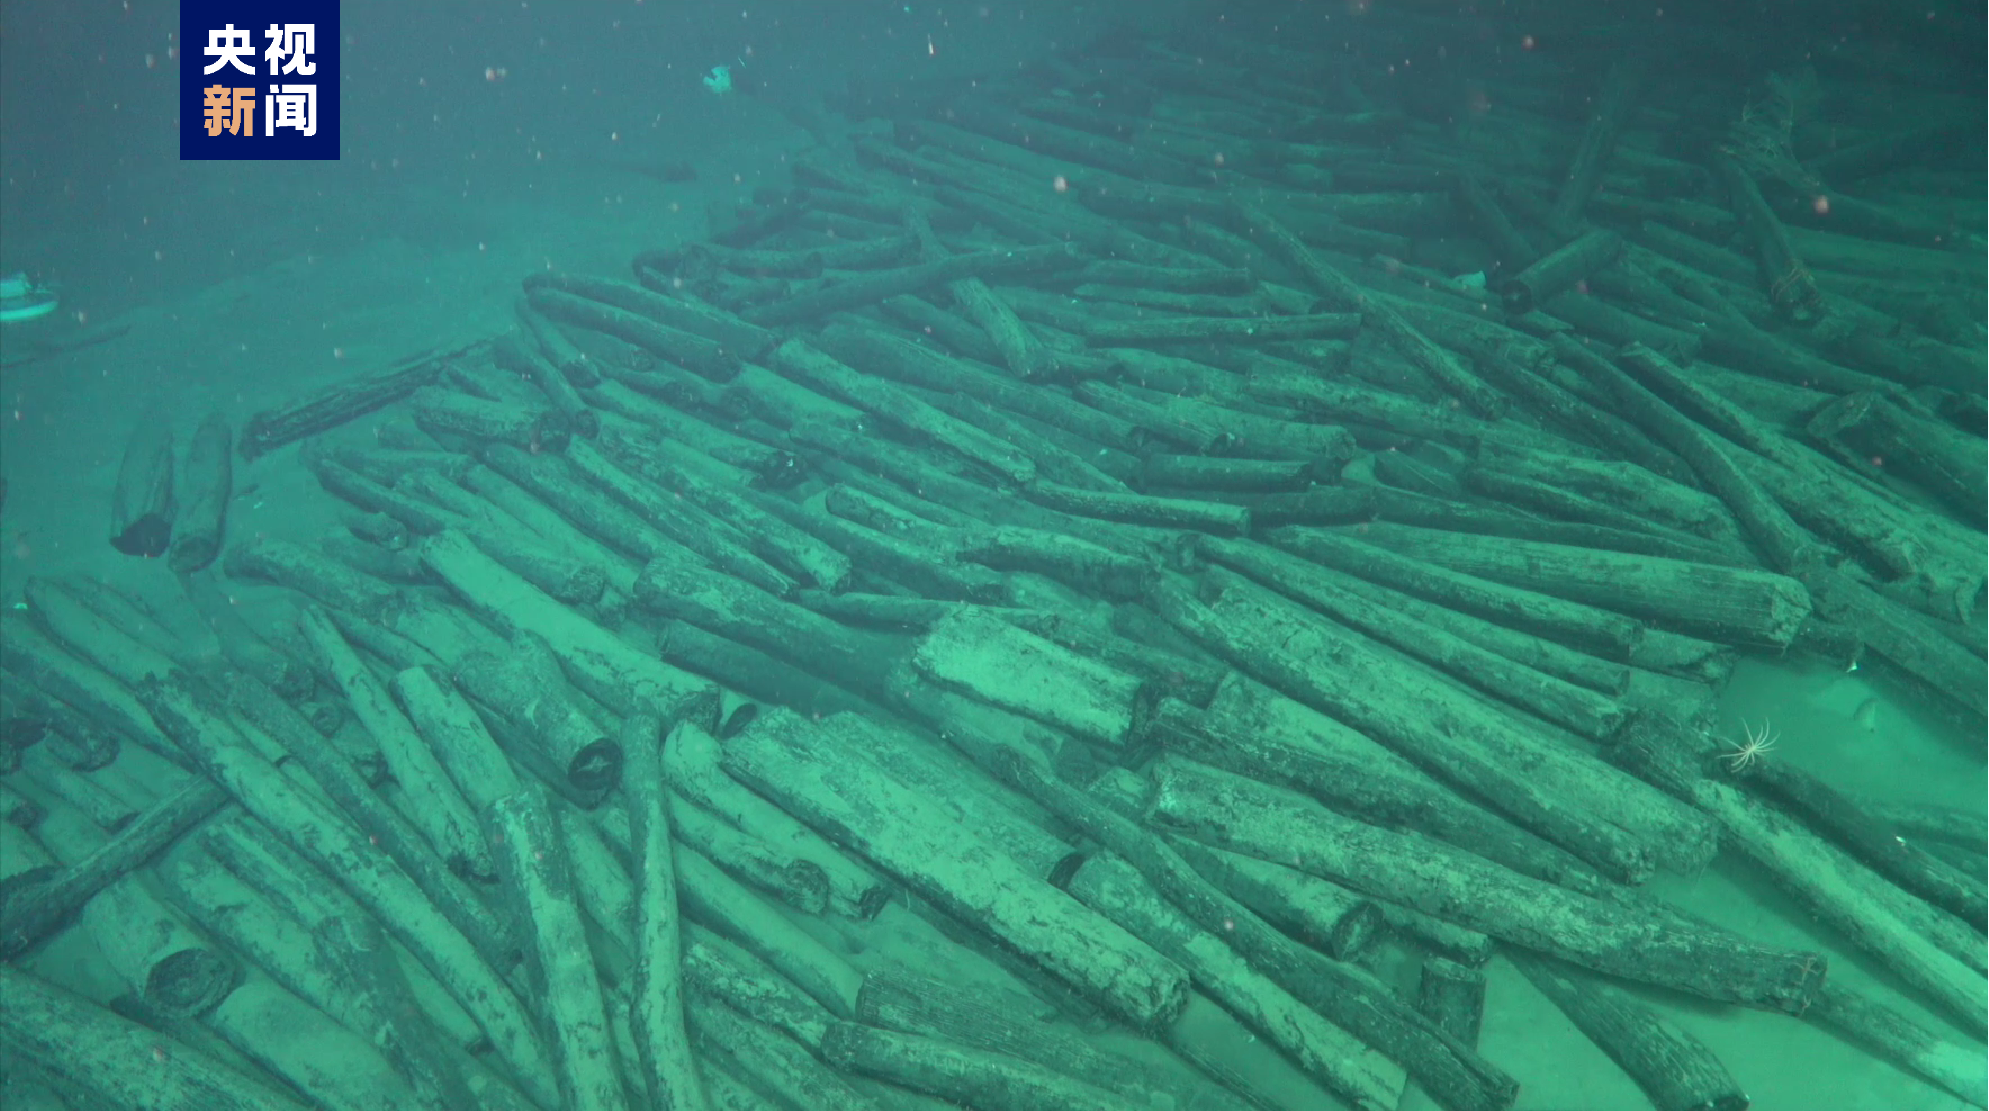 4K影像记录丨水下千米级深度沉船遗址布放永久测绘基点 载人潜水器深入拍摄